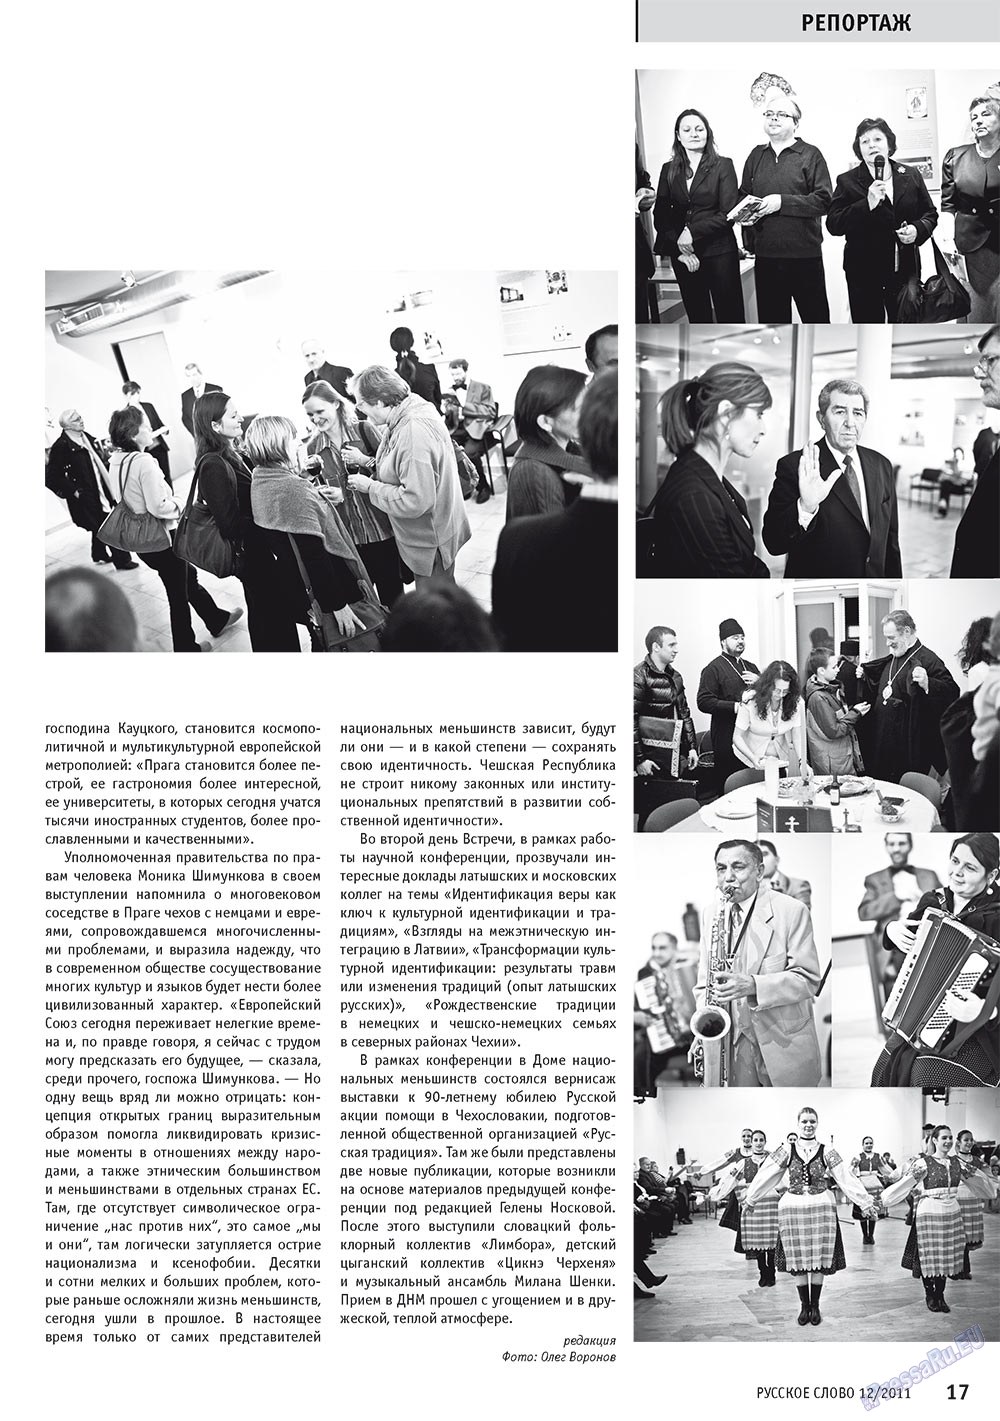 Русское слово, журнал. 2011 №12 стр.19